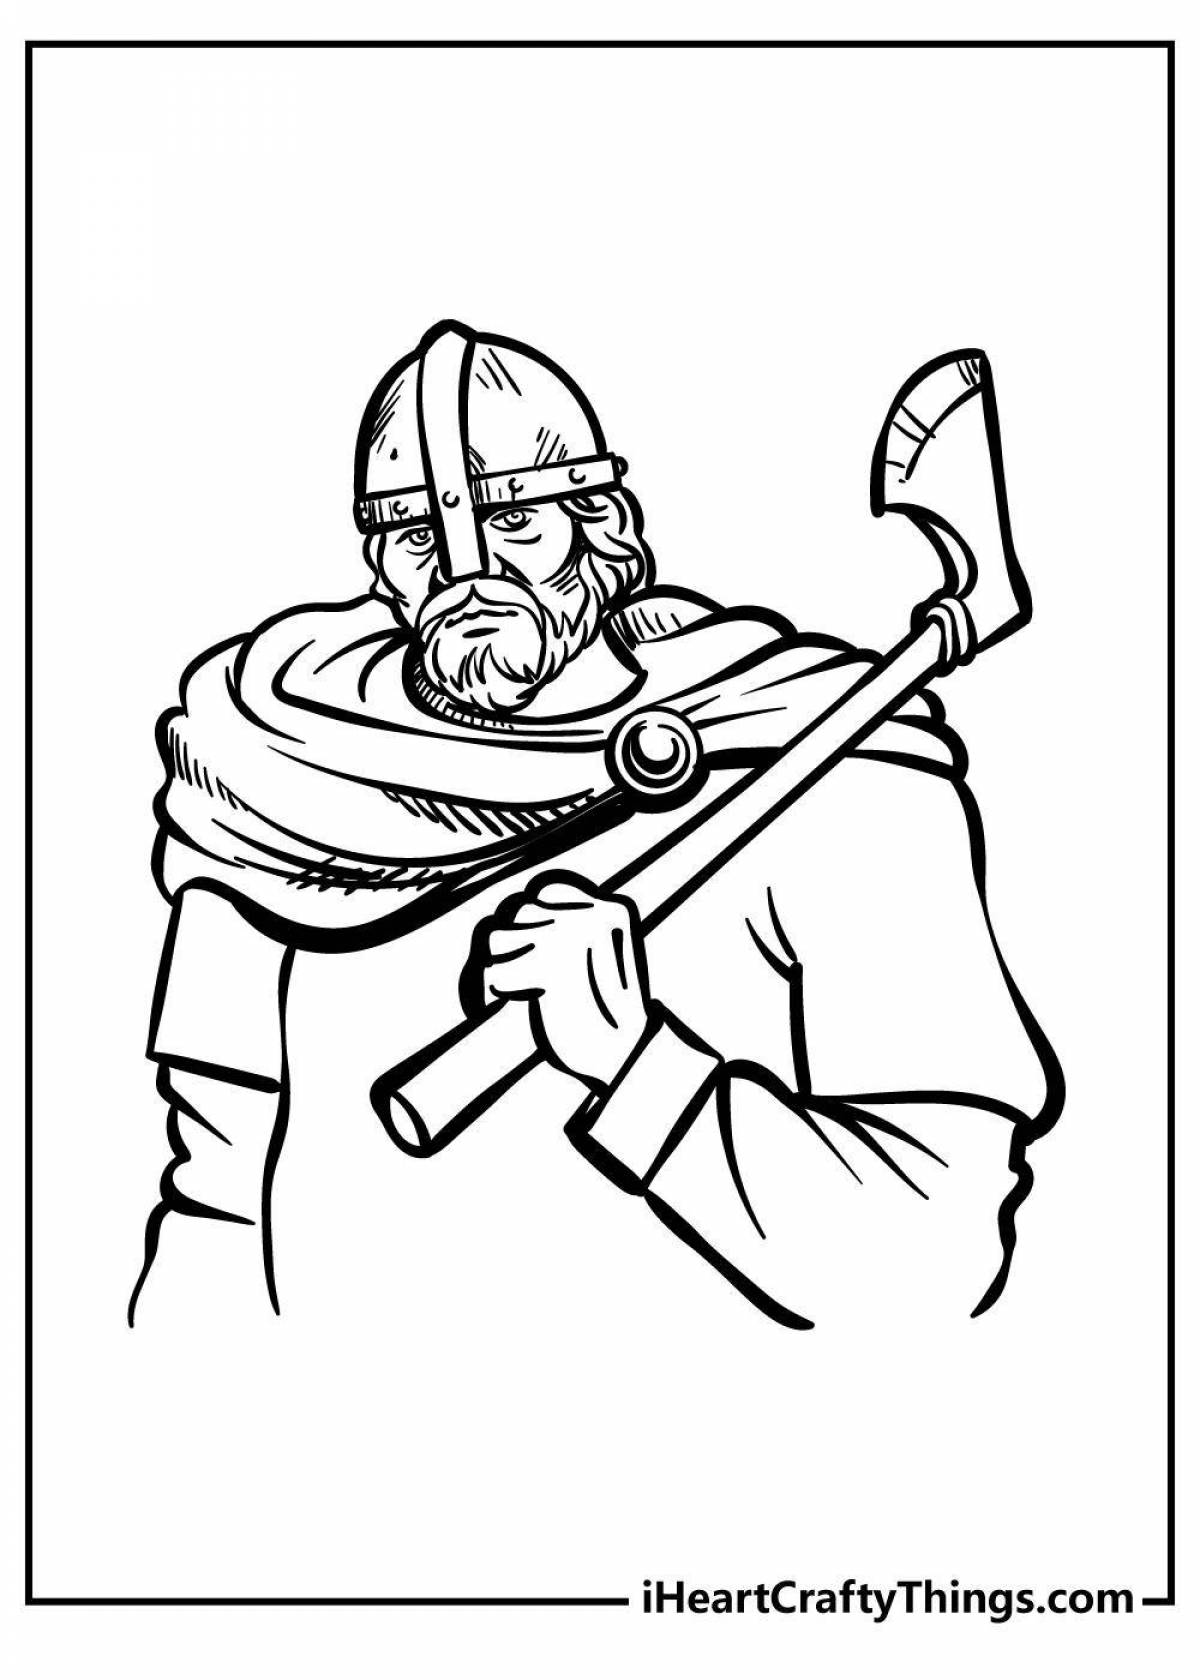 Раскраска решительный бой викингов